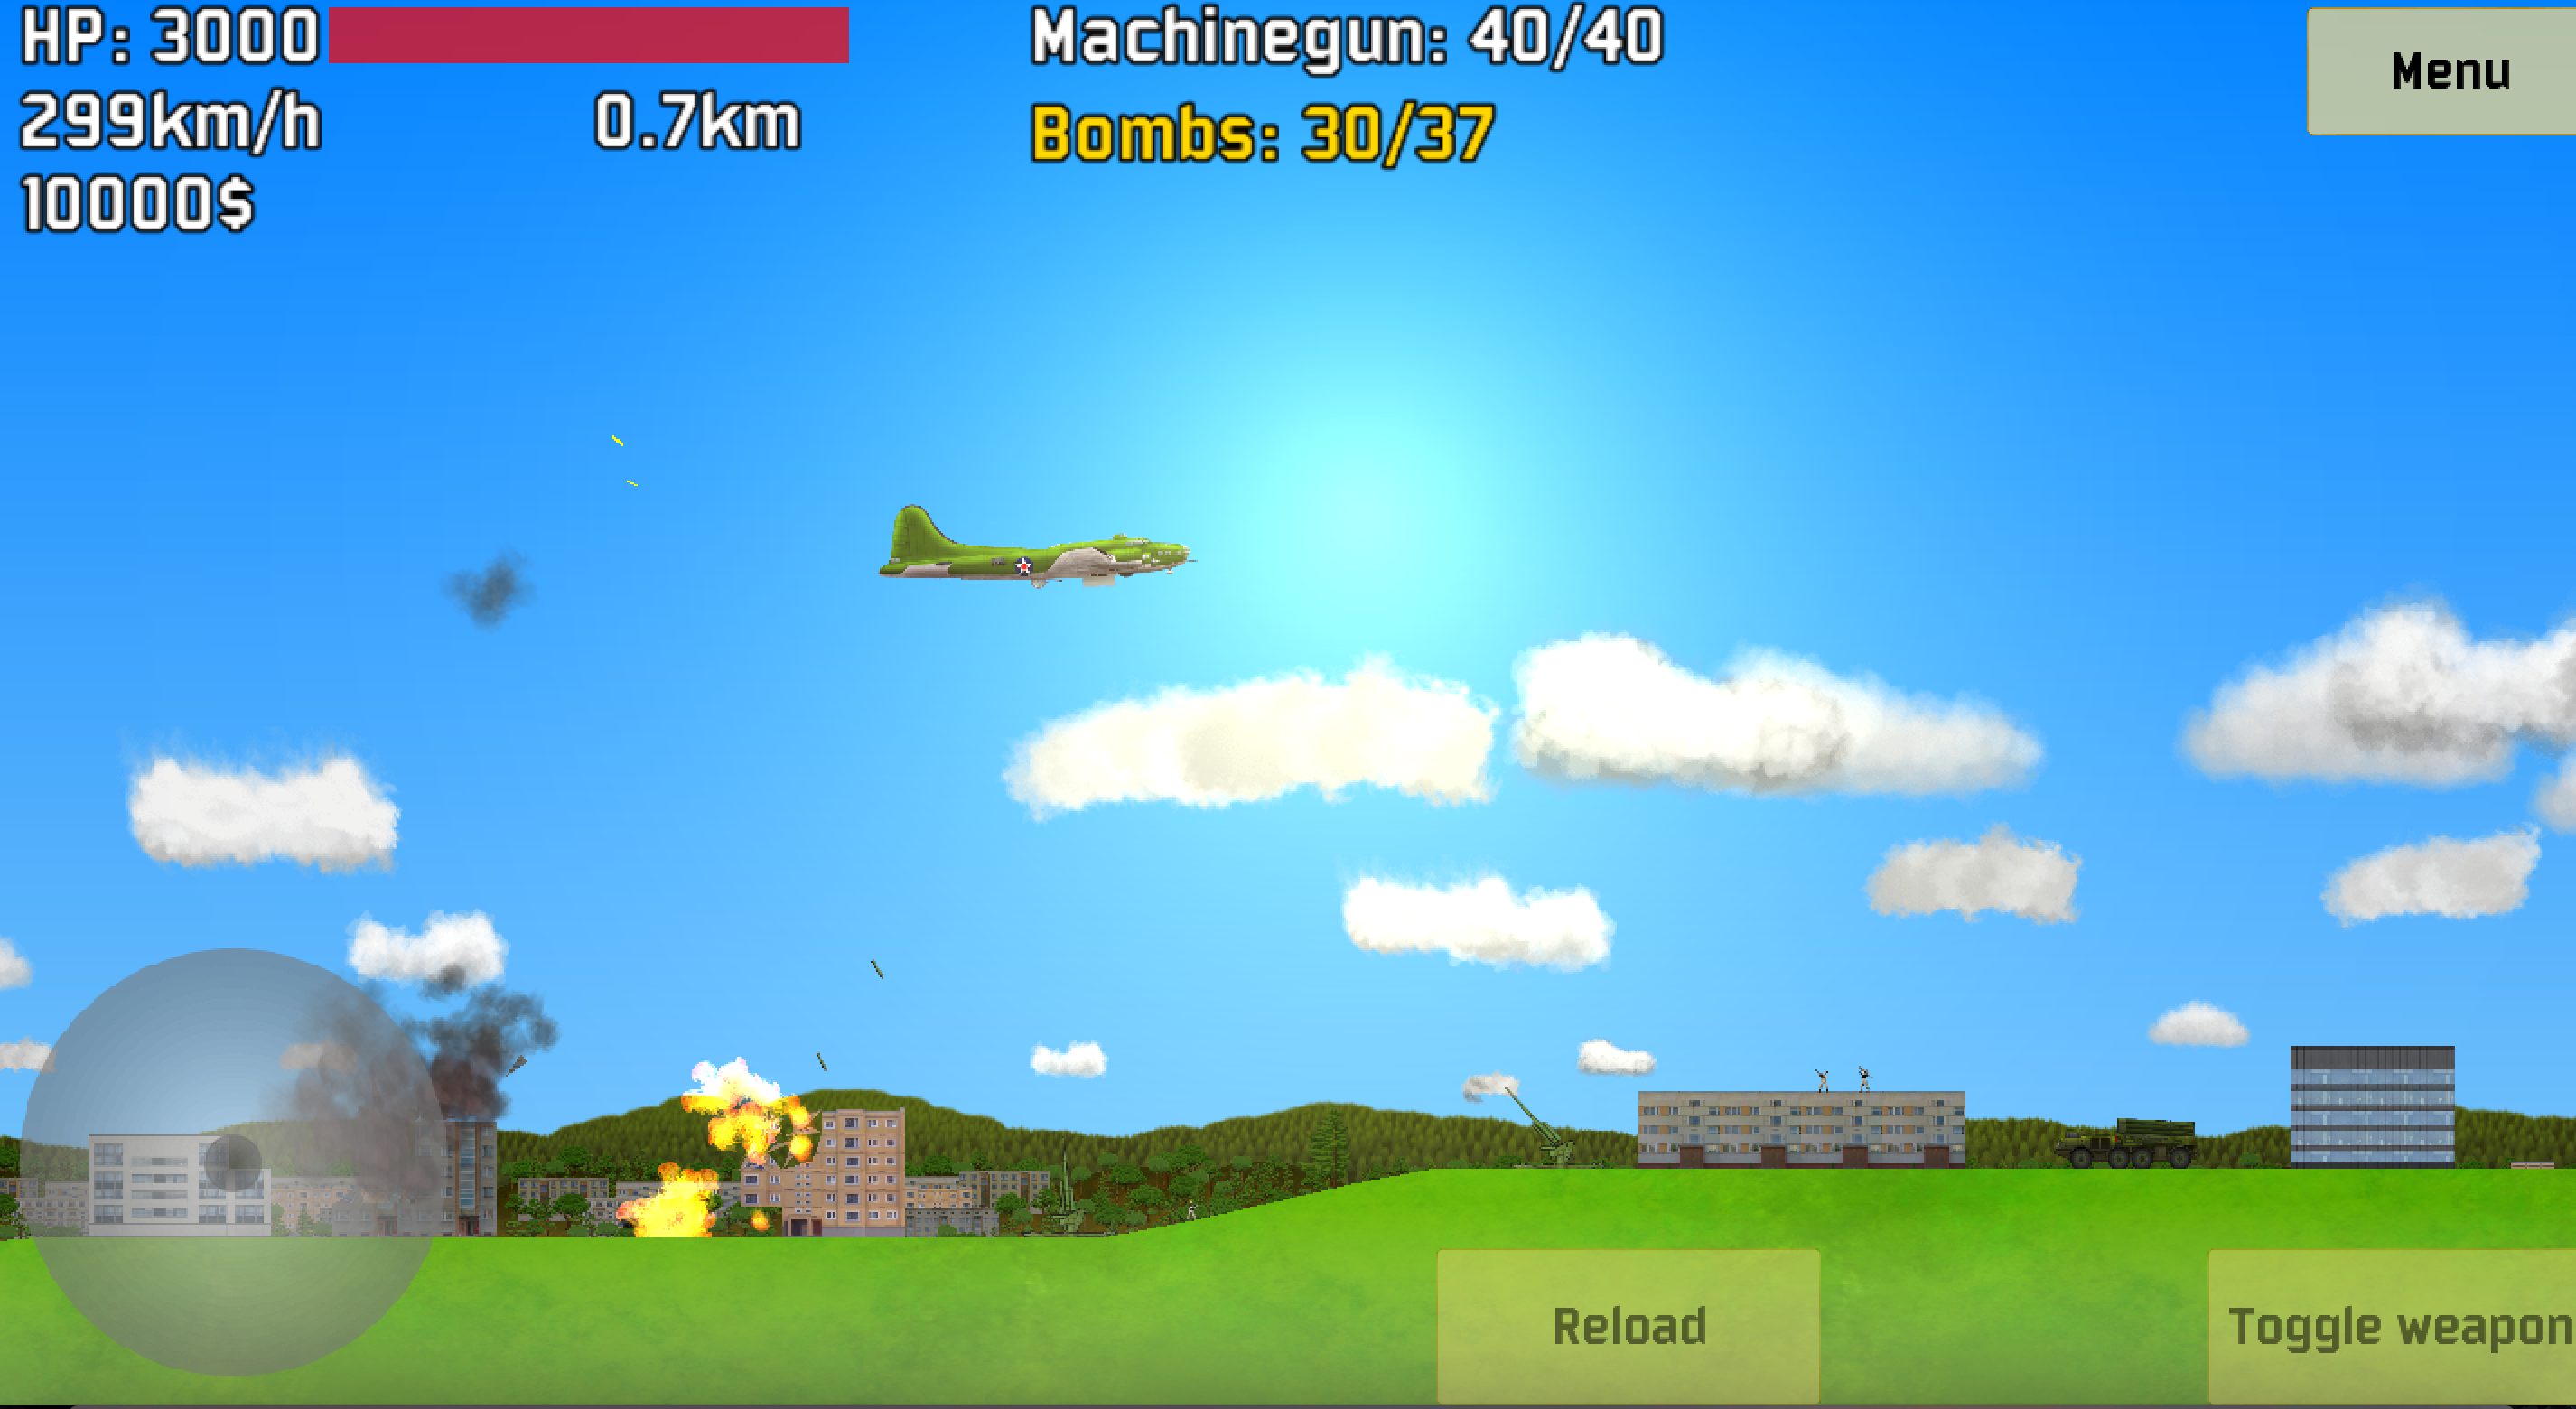 B-17 on bombing run